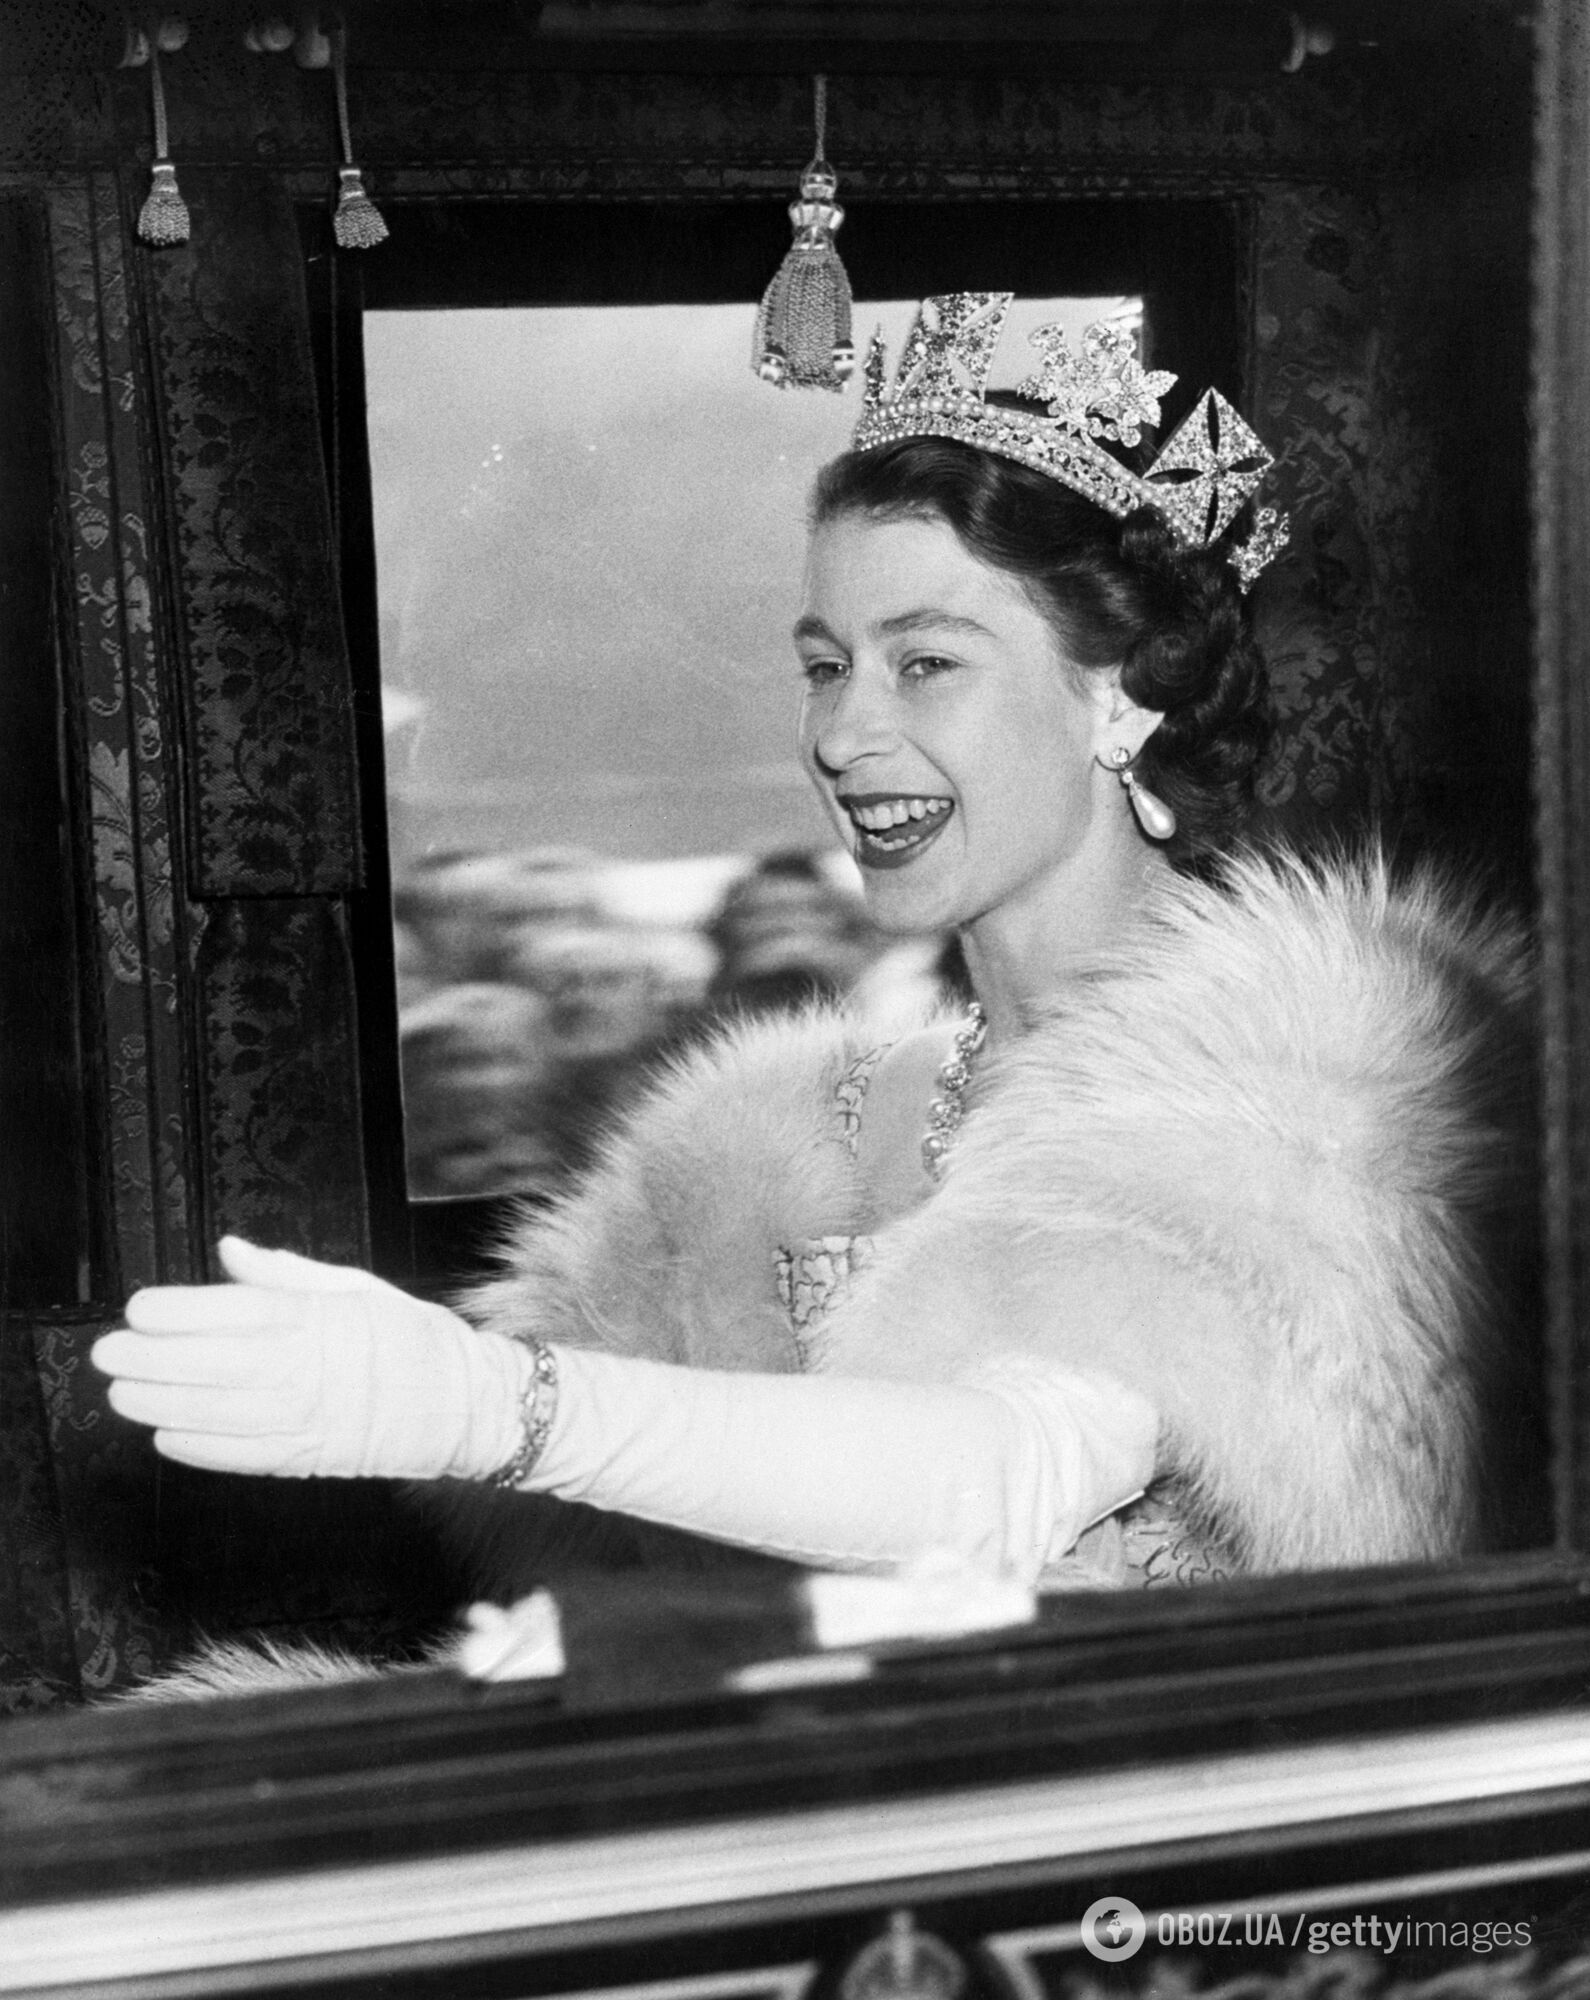 Єлизавета II обожнювала перегони і стояла у воротах: якими були спортивні уподобання британської королеви